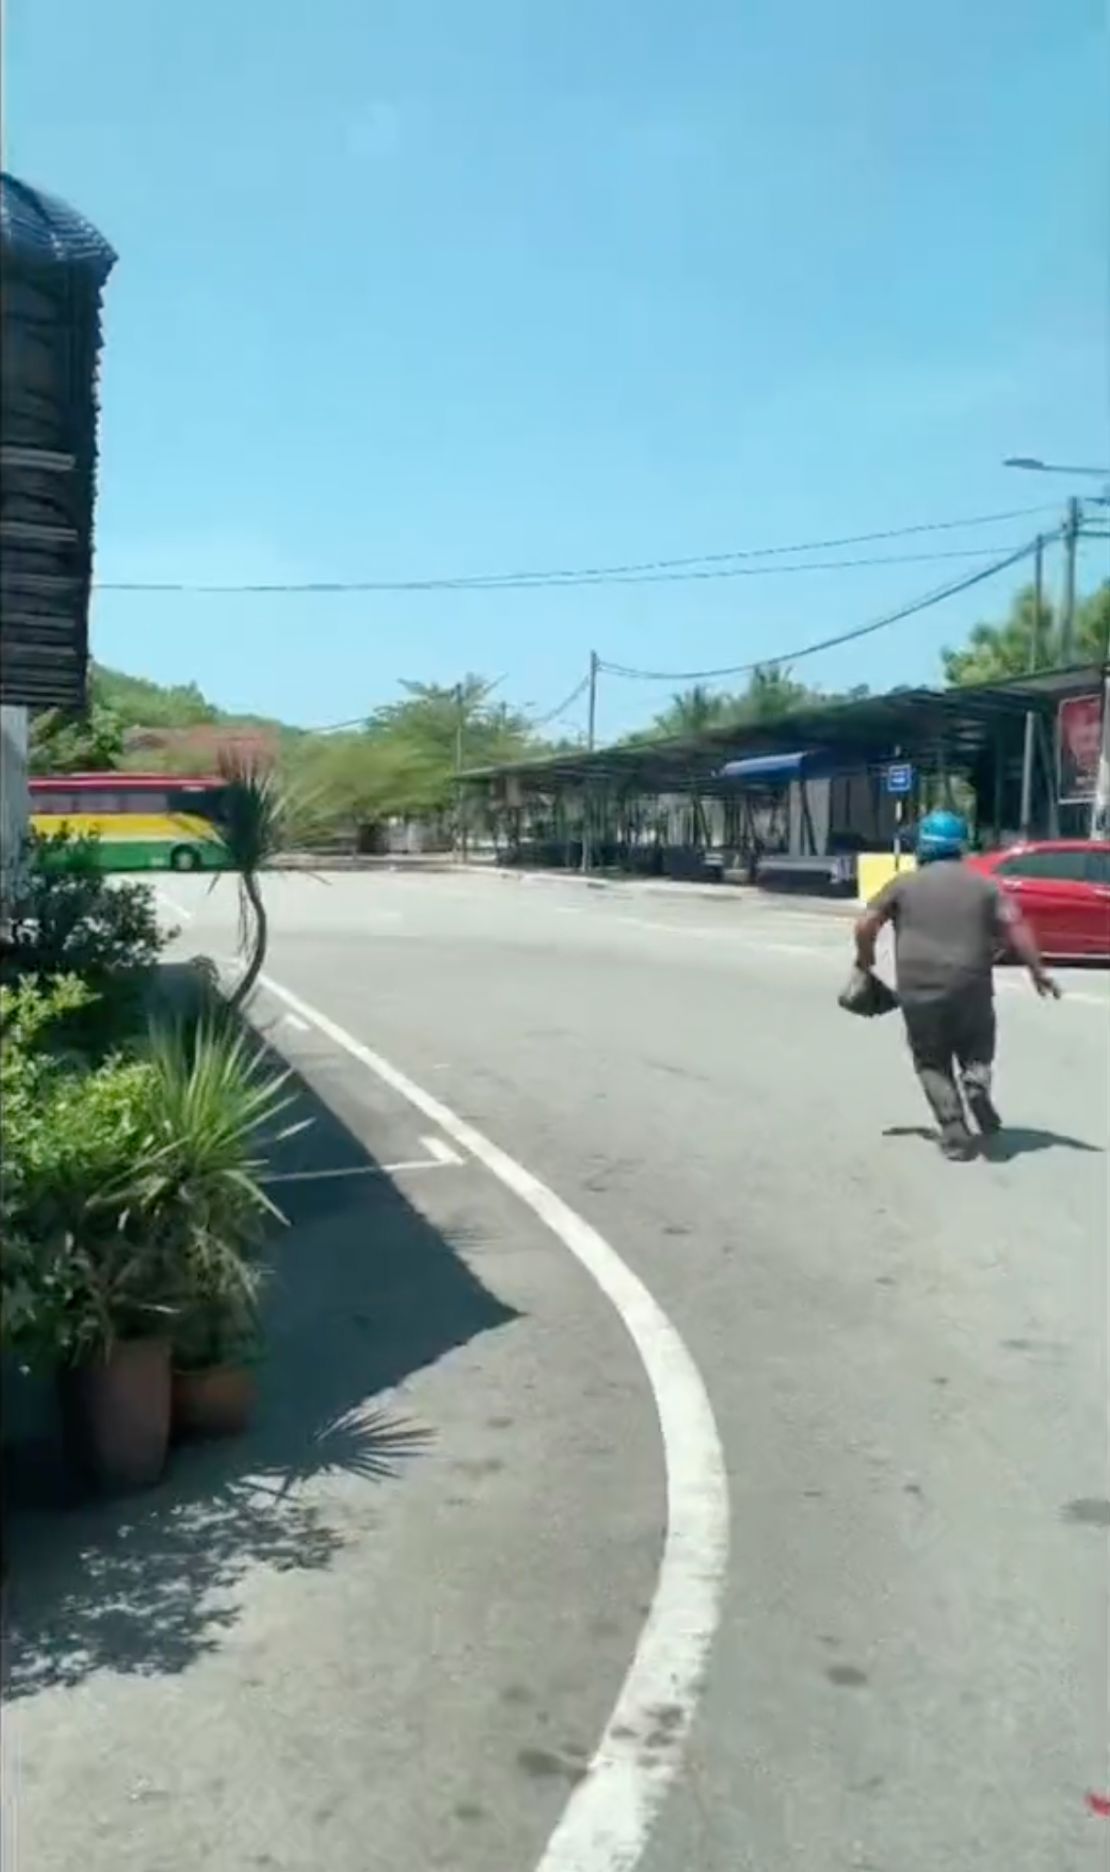 一名男子在宗教警察突袭霹雳州一家餐馆时逃跑。 图片取自地方当局在 TikTok 上发布的突袭视频。